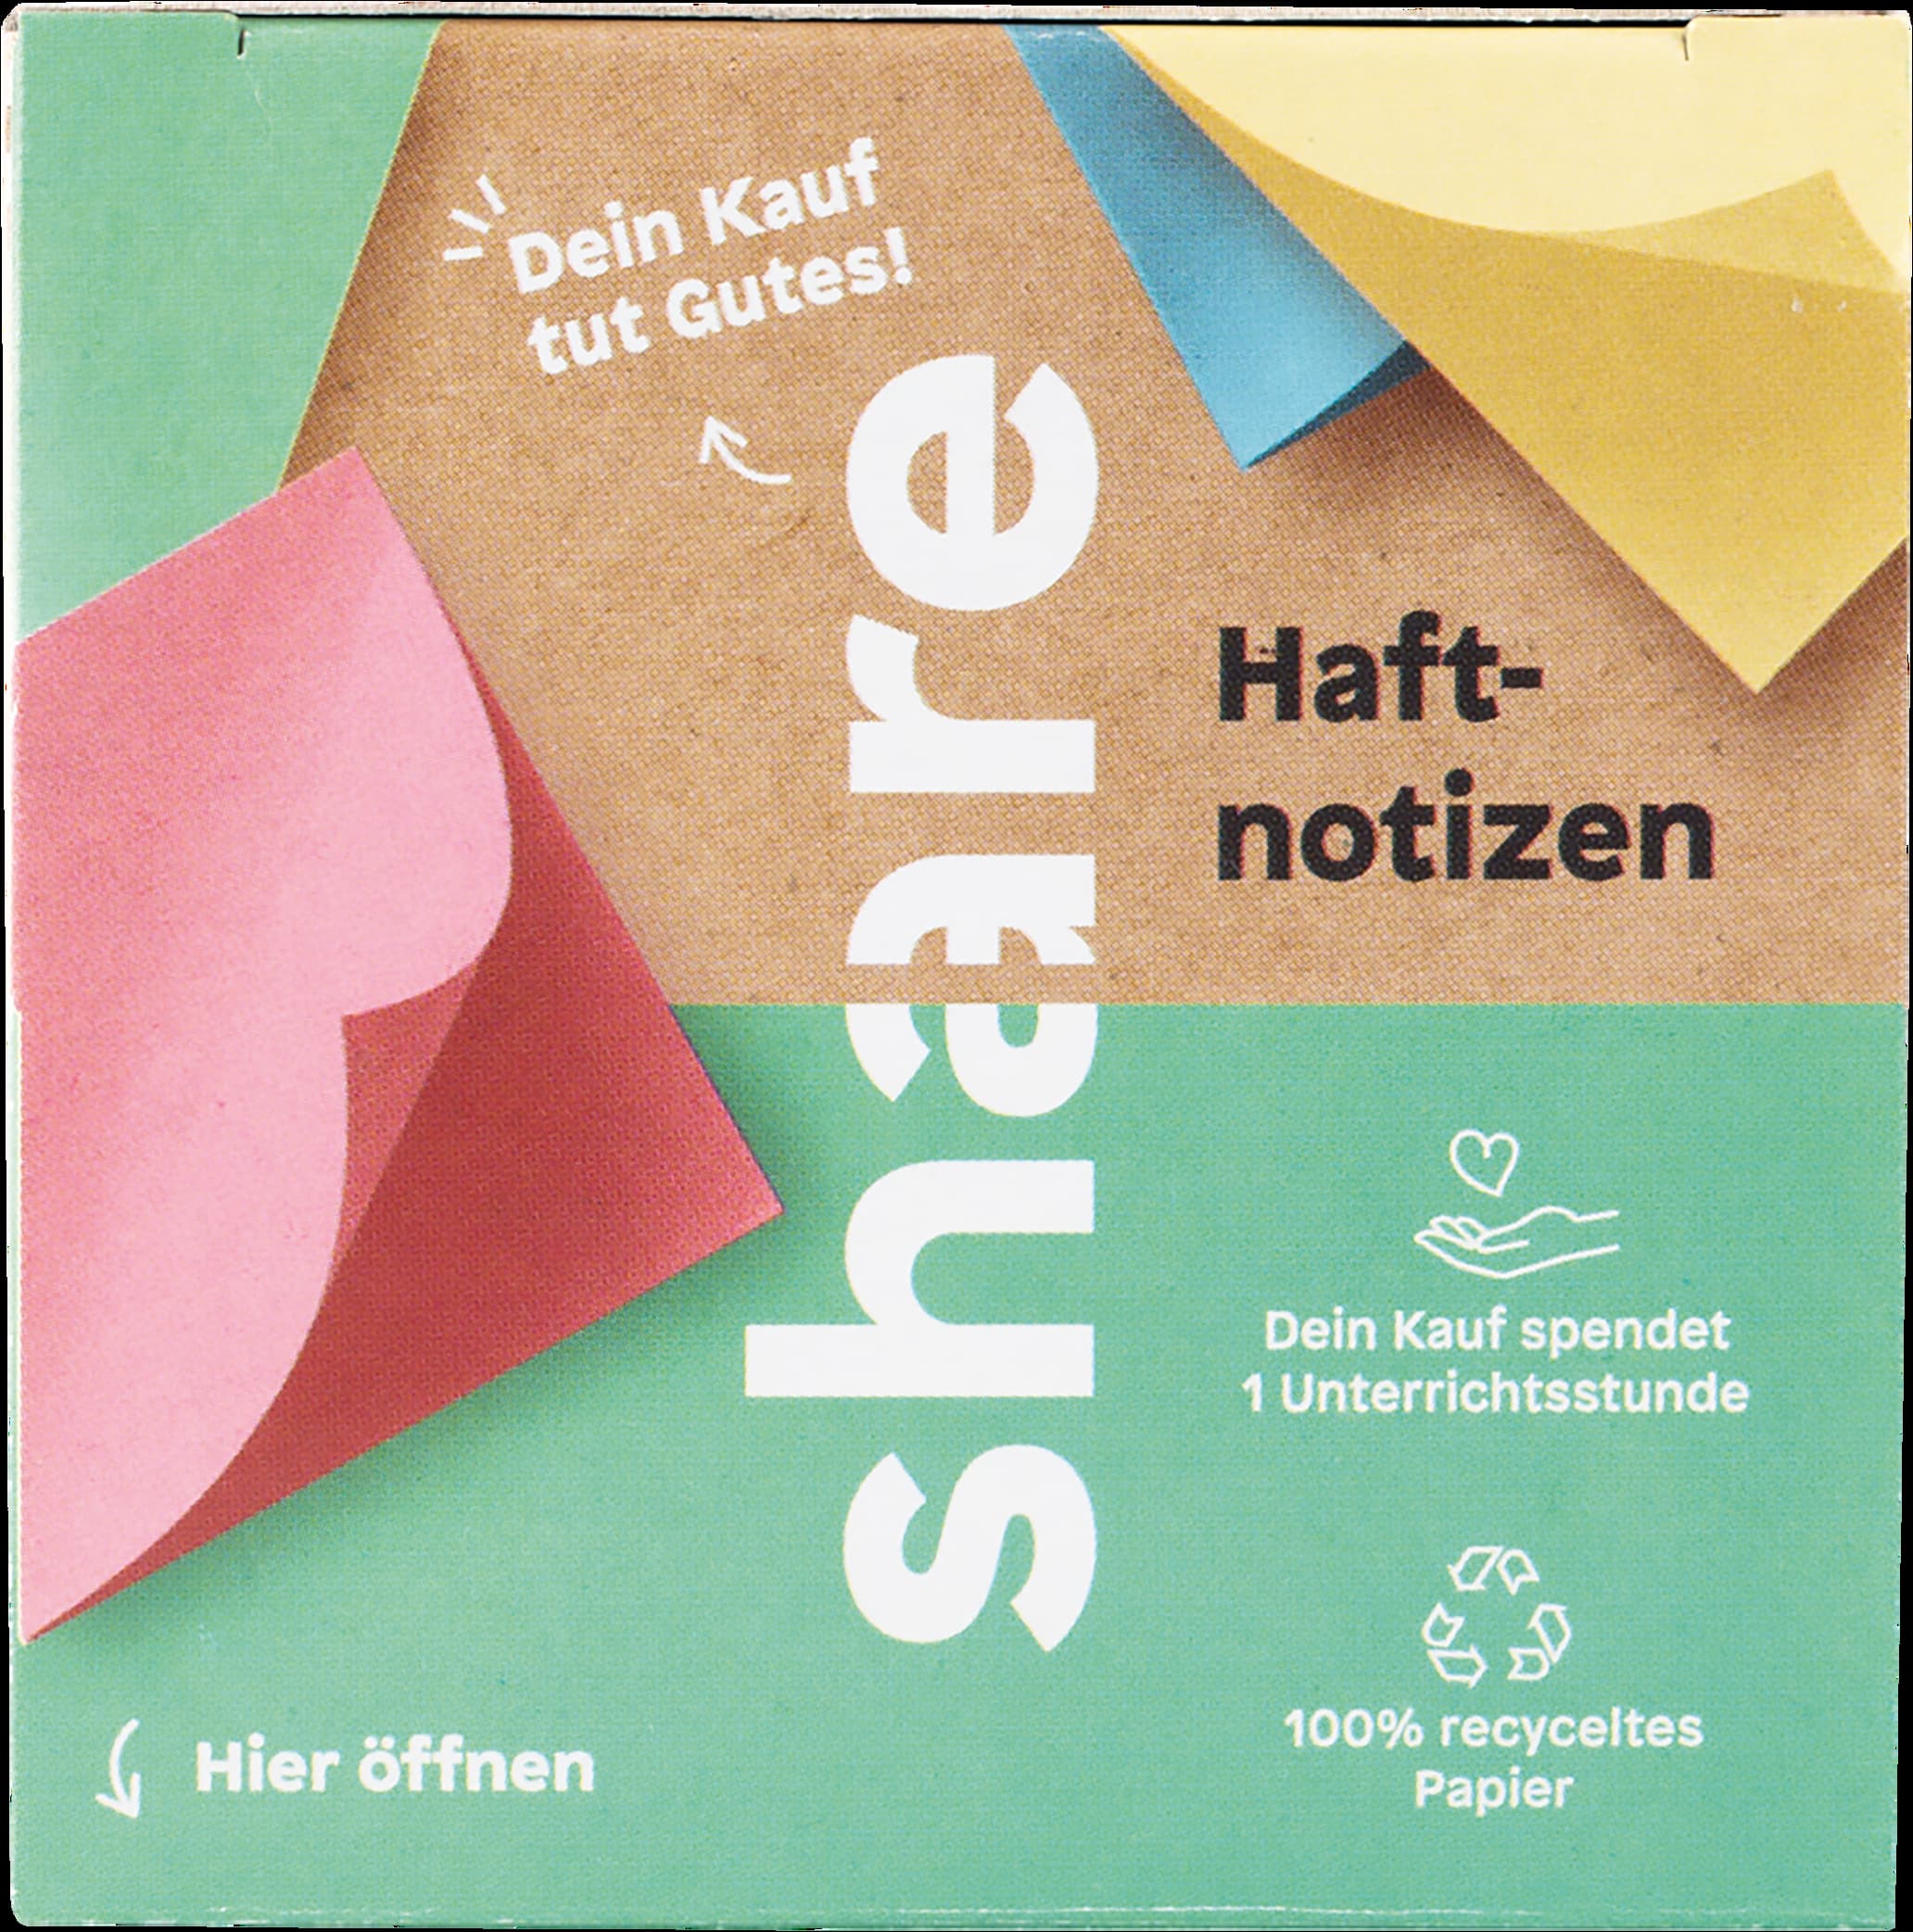 Eine Packung Share Haftnotizblock-Haftnotizen mit Text, der die Produktmerkmale hervorhebt, wie „1 Block in 5 Farben“, „100 Blatt pro Farbe“ und „Made in Germany“, was auf Qualität und Vielfalt hinweist.